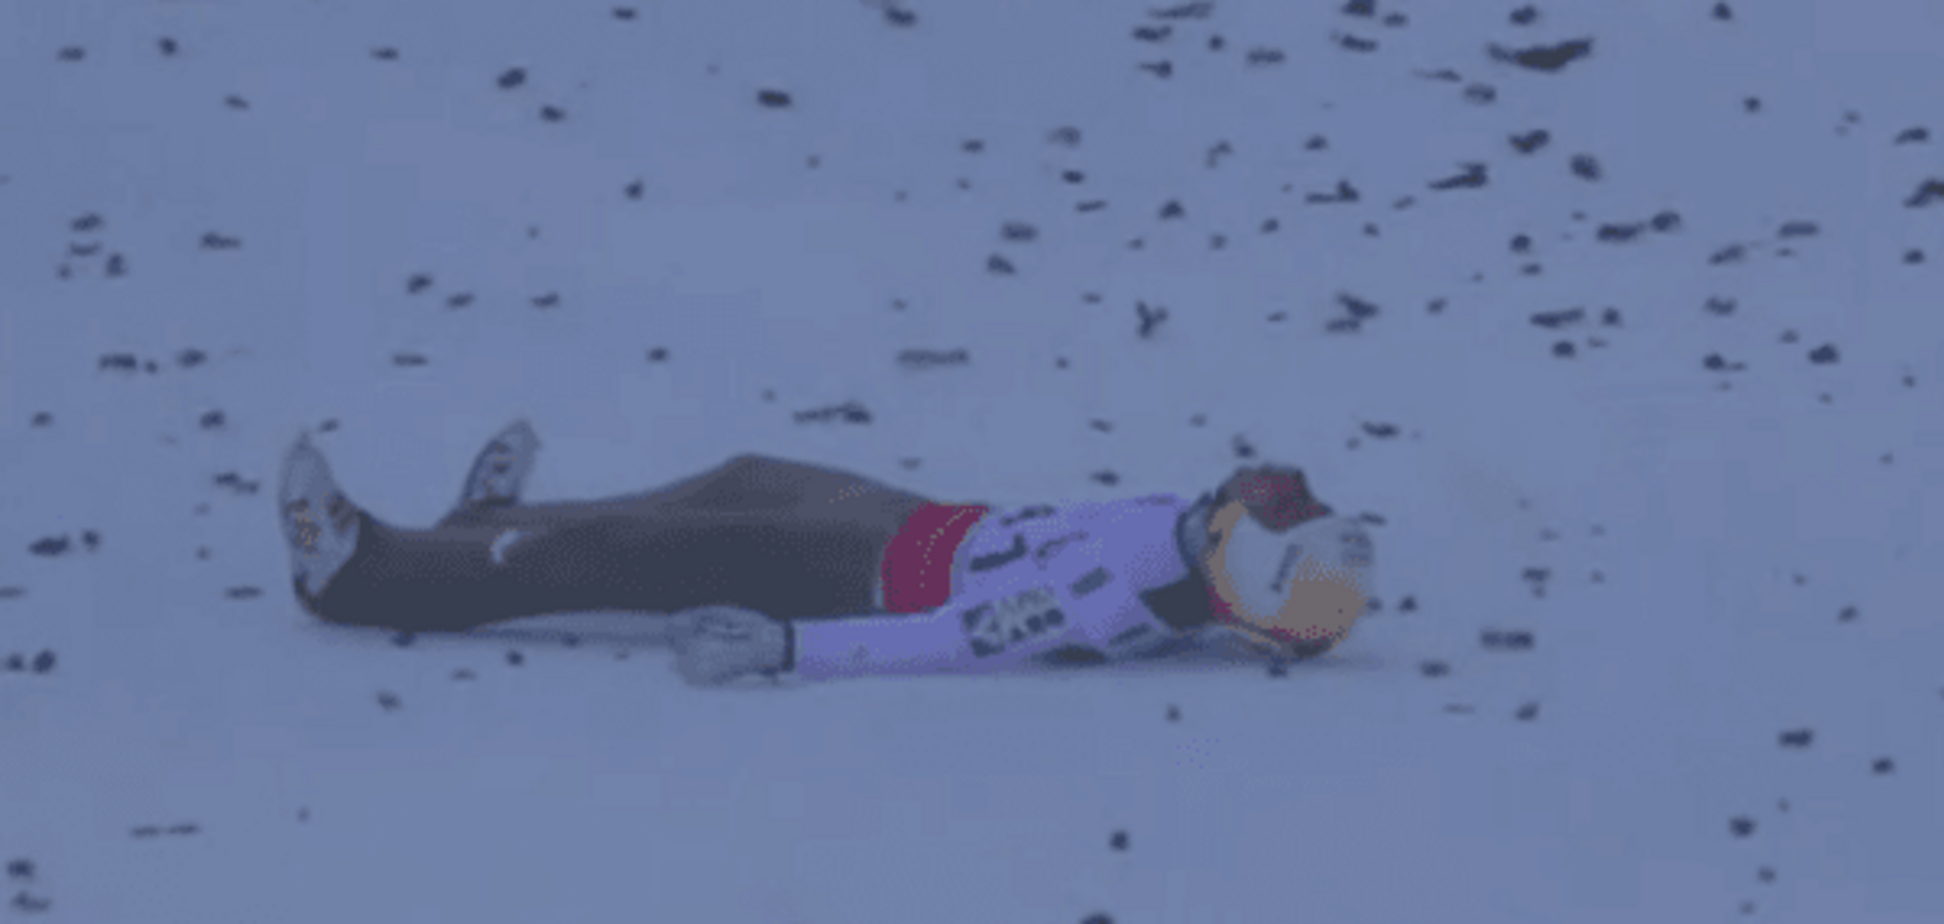 Відомий австрійський чемпіон ледь не розбився під час страшного падіння на турнірі в Німеччині: відео моменту